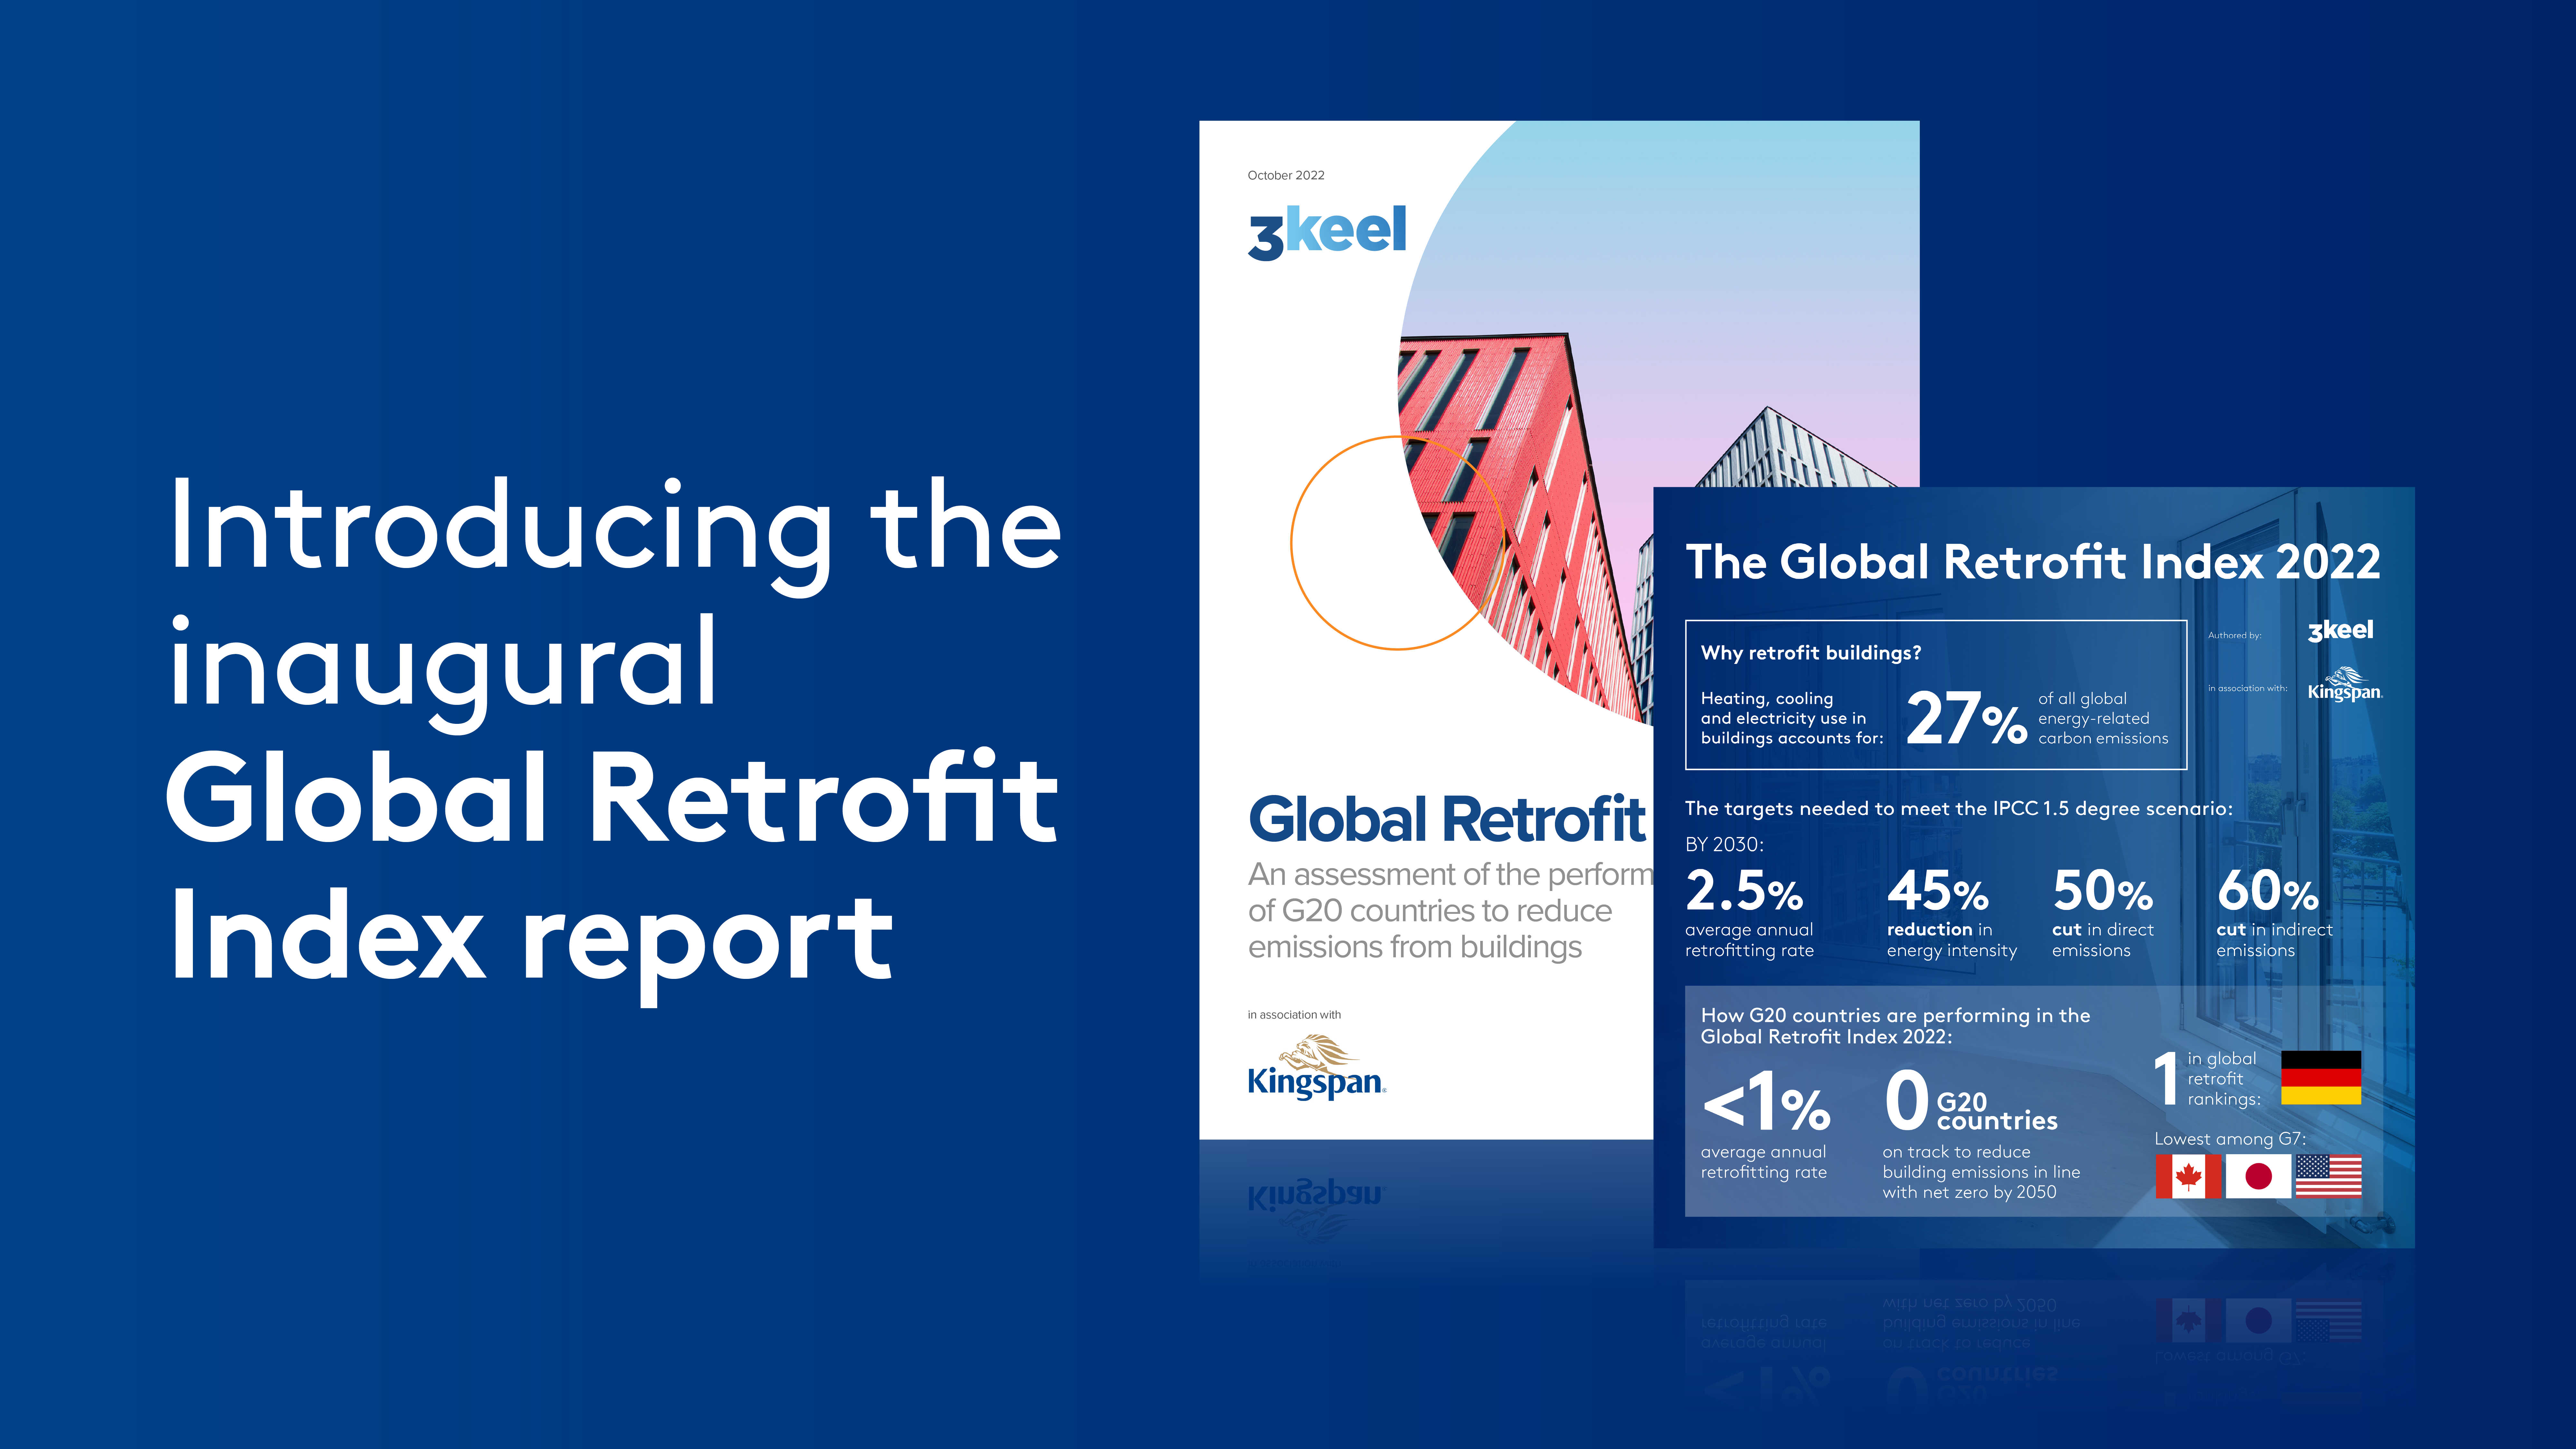 Global Retrofit Index